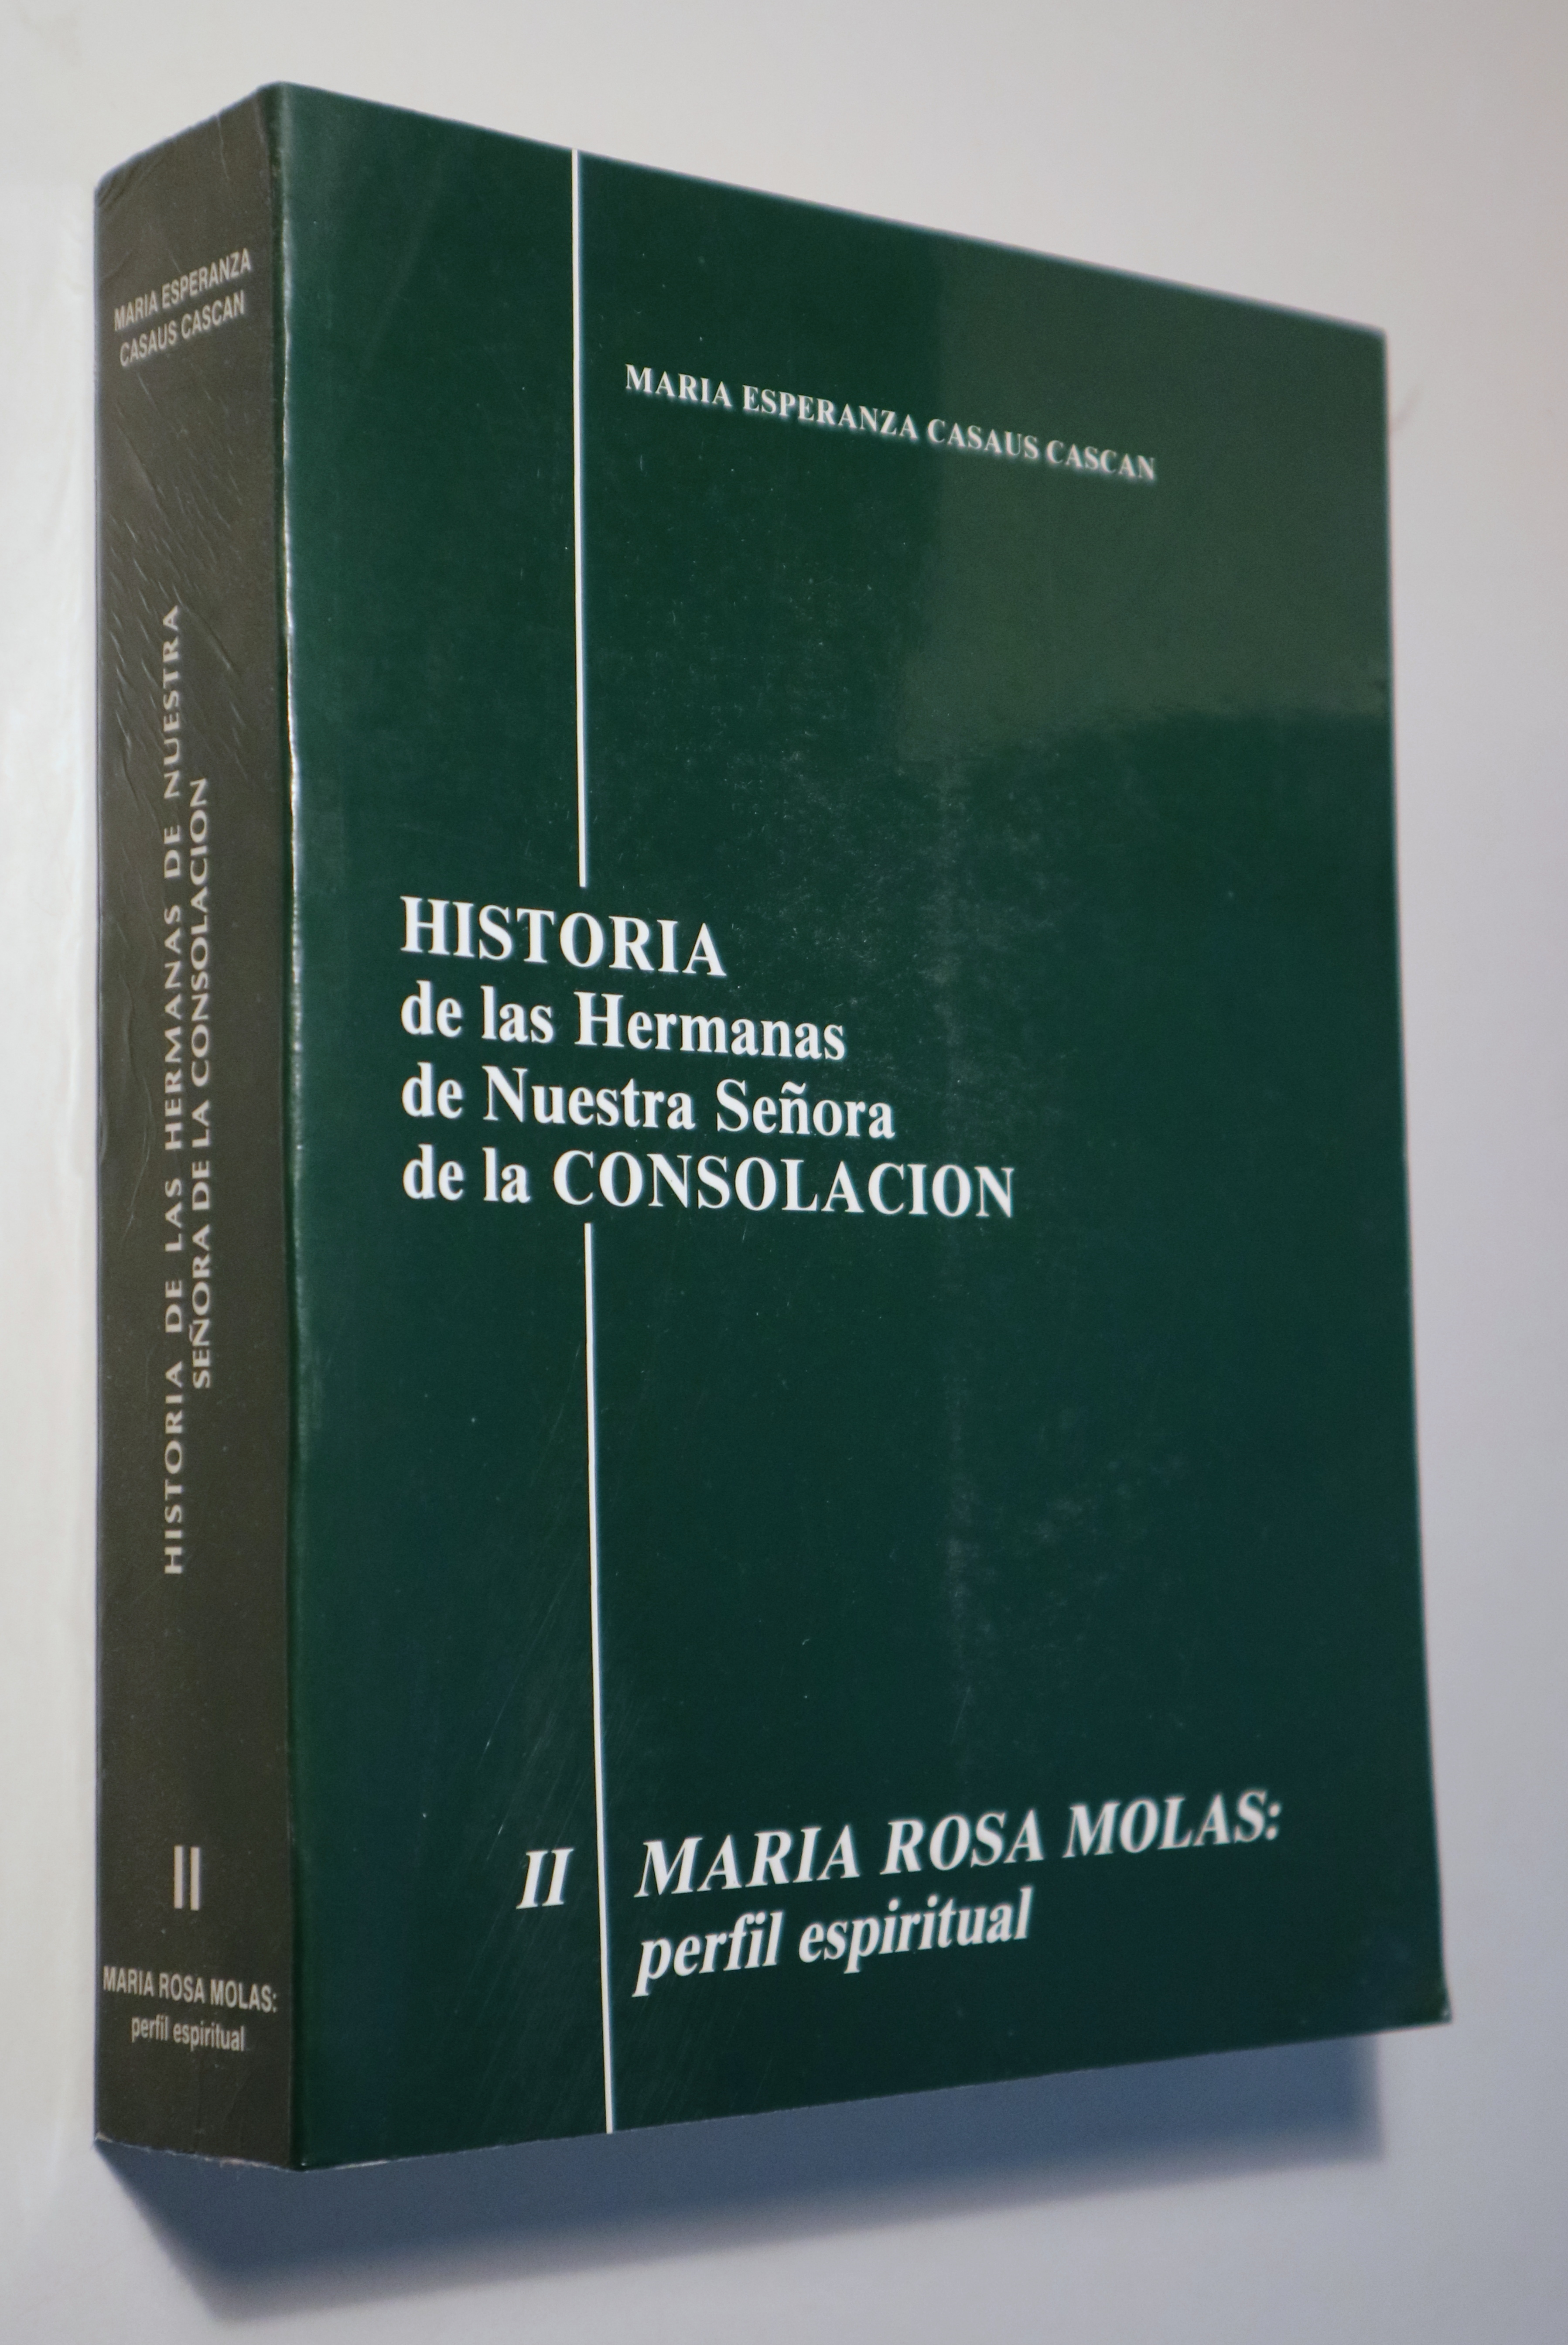 HISTORIA DE LAS HEMANAS DE NUESTRA SEÑORA DE LA CONSOLACIÓN. Tomo II: M. ROSA MOLAS PERFIL ESPIRITUAL - Madrid 1986